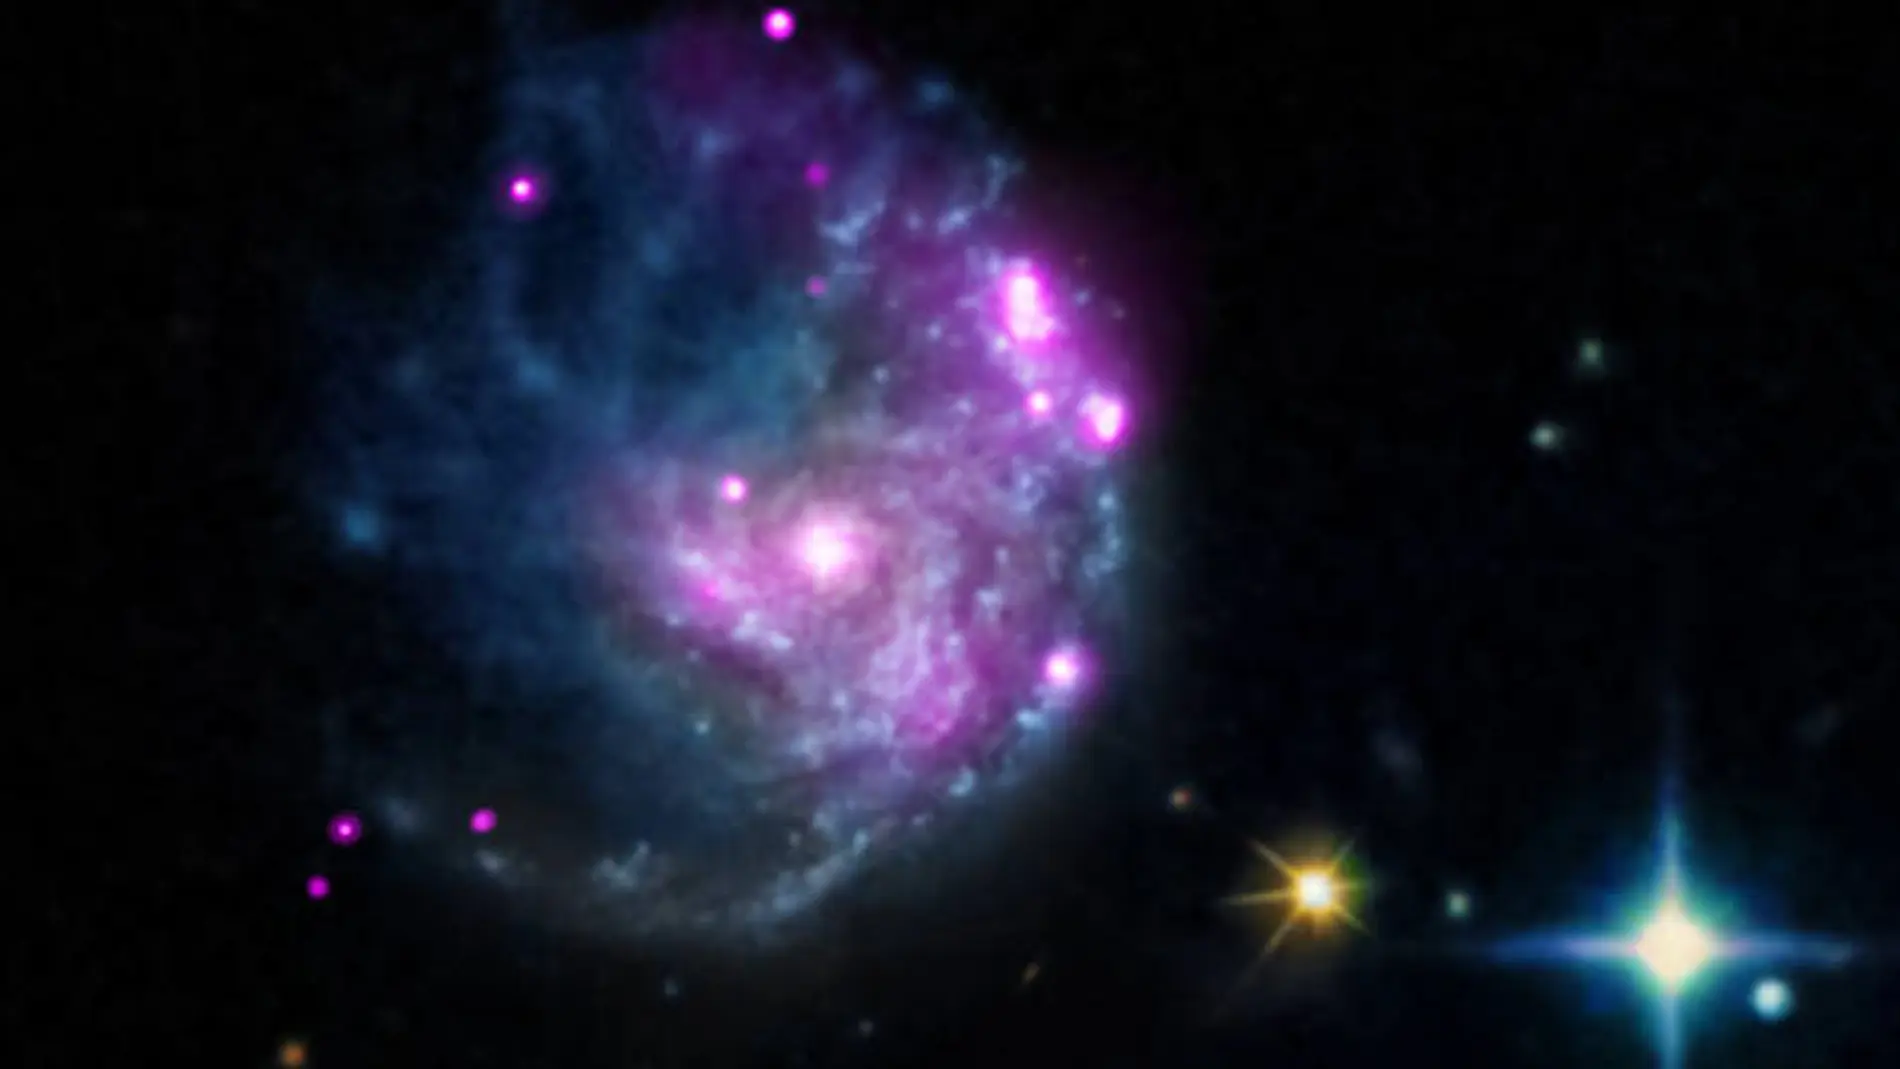 Un nuevo objeto descubierto en la galaxia NGC 2276 puede llegar a ser un importante agujero negro que ayude a completar la historia evolutiva de estos objetos exóticos